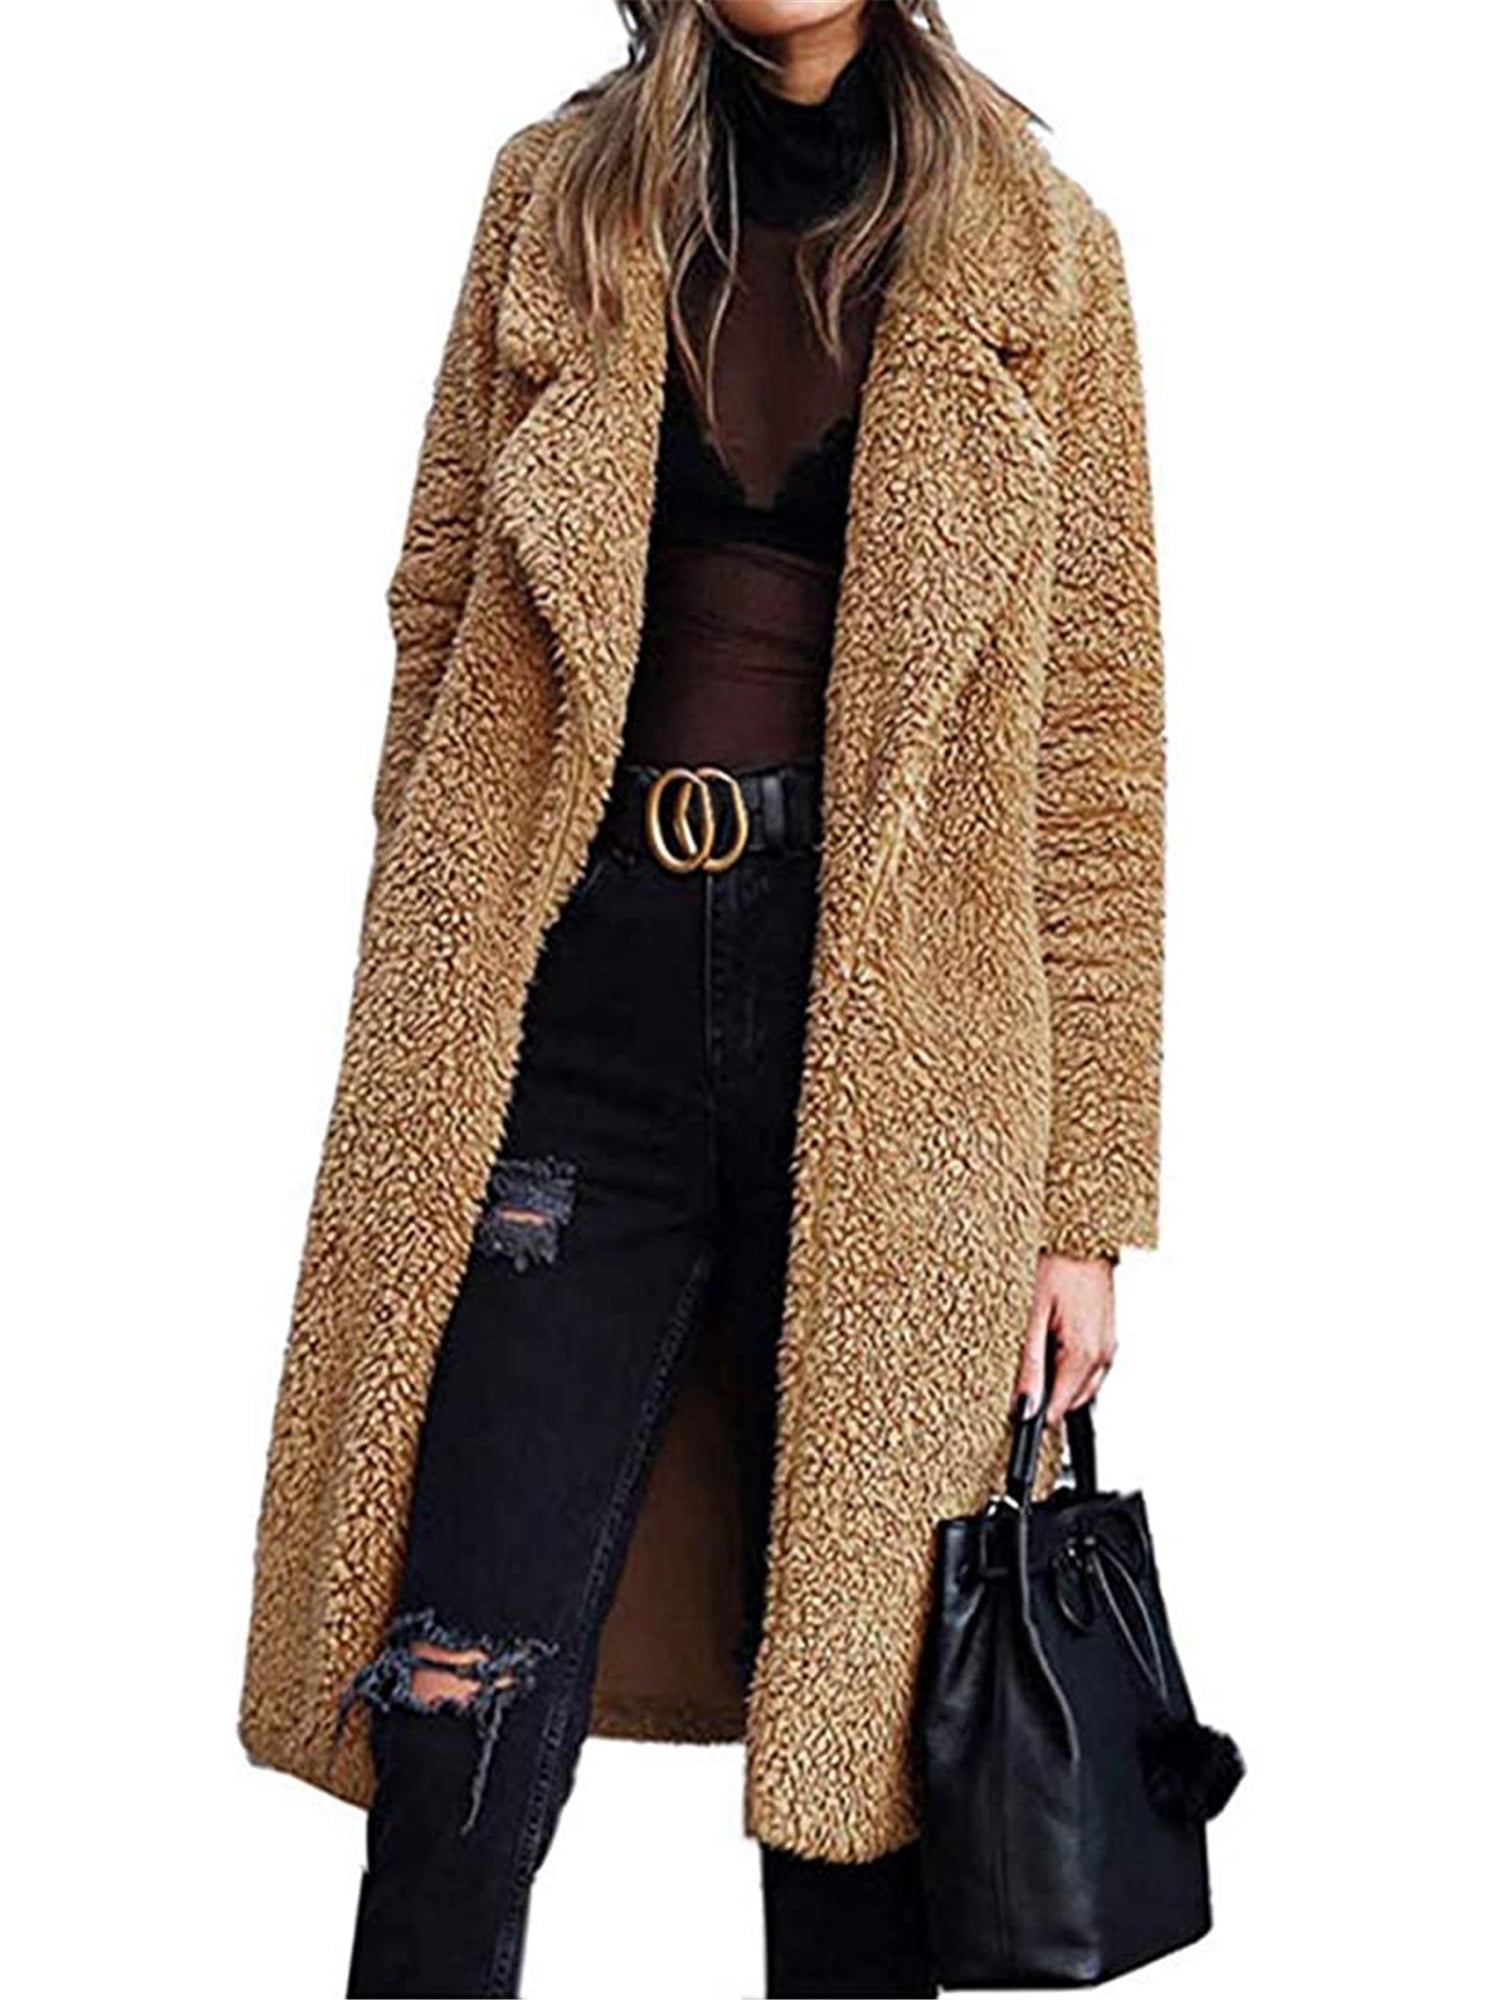 AiYannis6 Women Winter Warm Lapel Long Fluffy Faux Fur Cloak Sweater Cardigan Overcoat Jacket Coat Midi-Length Outerwear 